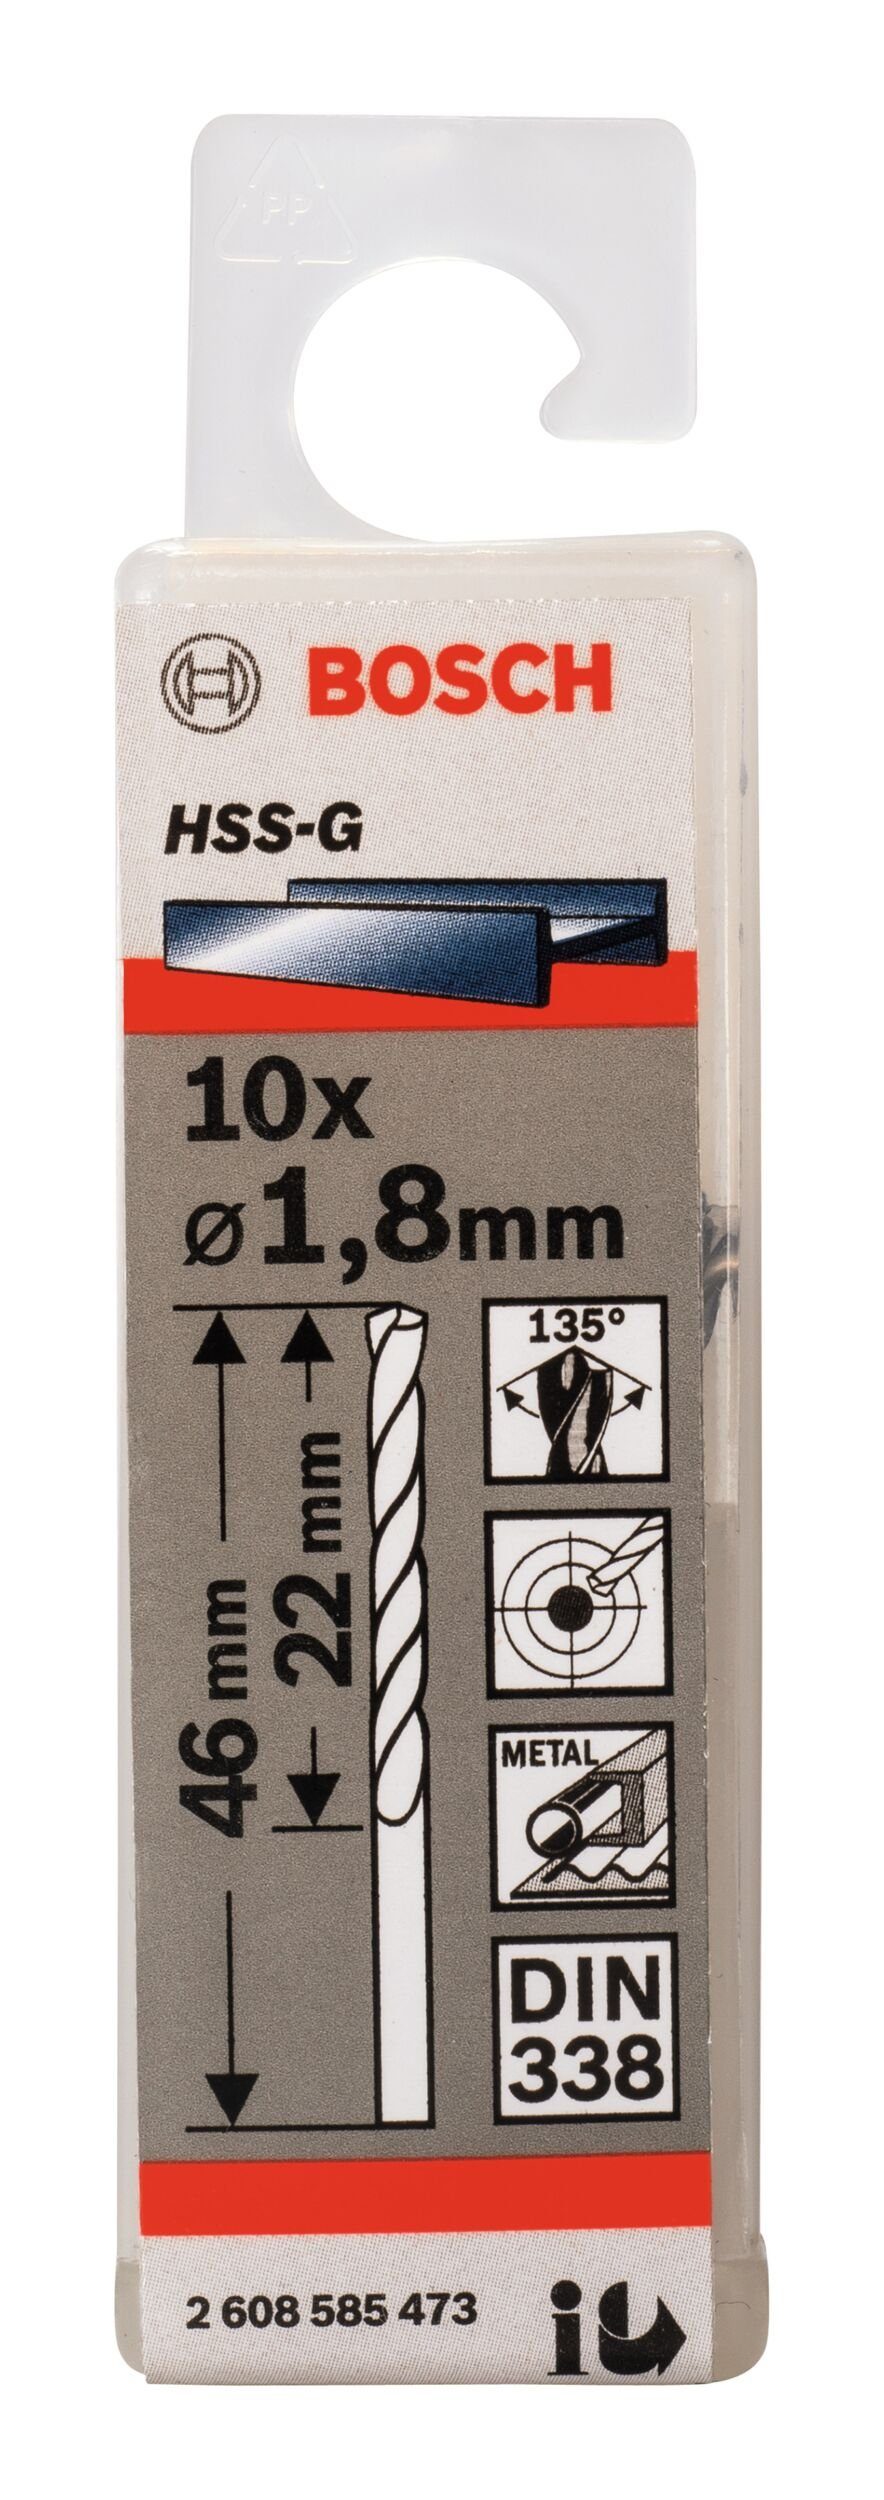 46 (DIN Stück), x 22 (10 mm 1,8 Metallbohrer, 10er-Pack HSS-G - 338) x BOSCH -